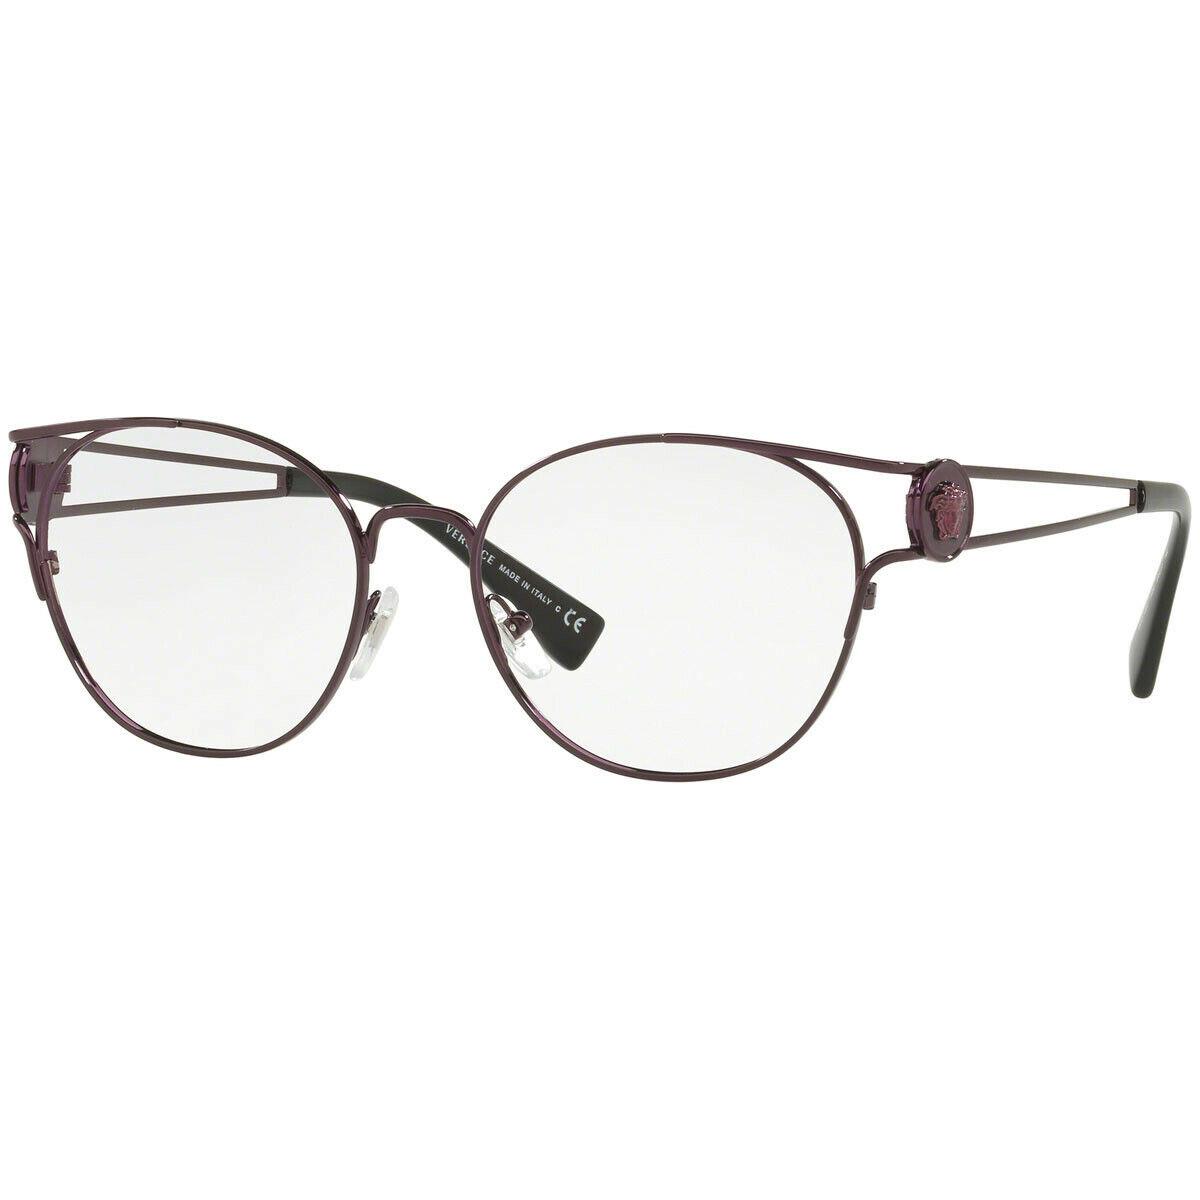 Versace Round Eyeglasses VE1250 1250 54mm Violet / Demo Lens 54-17-140 - Violet Frame